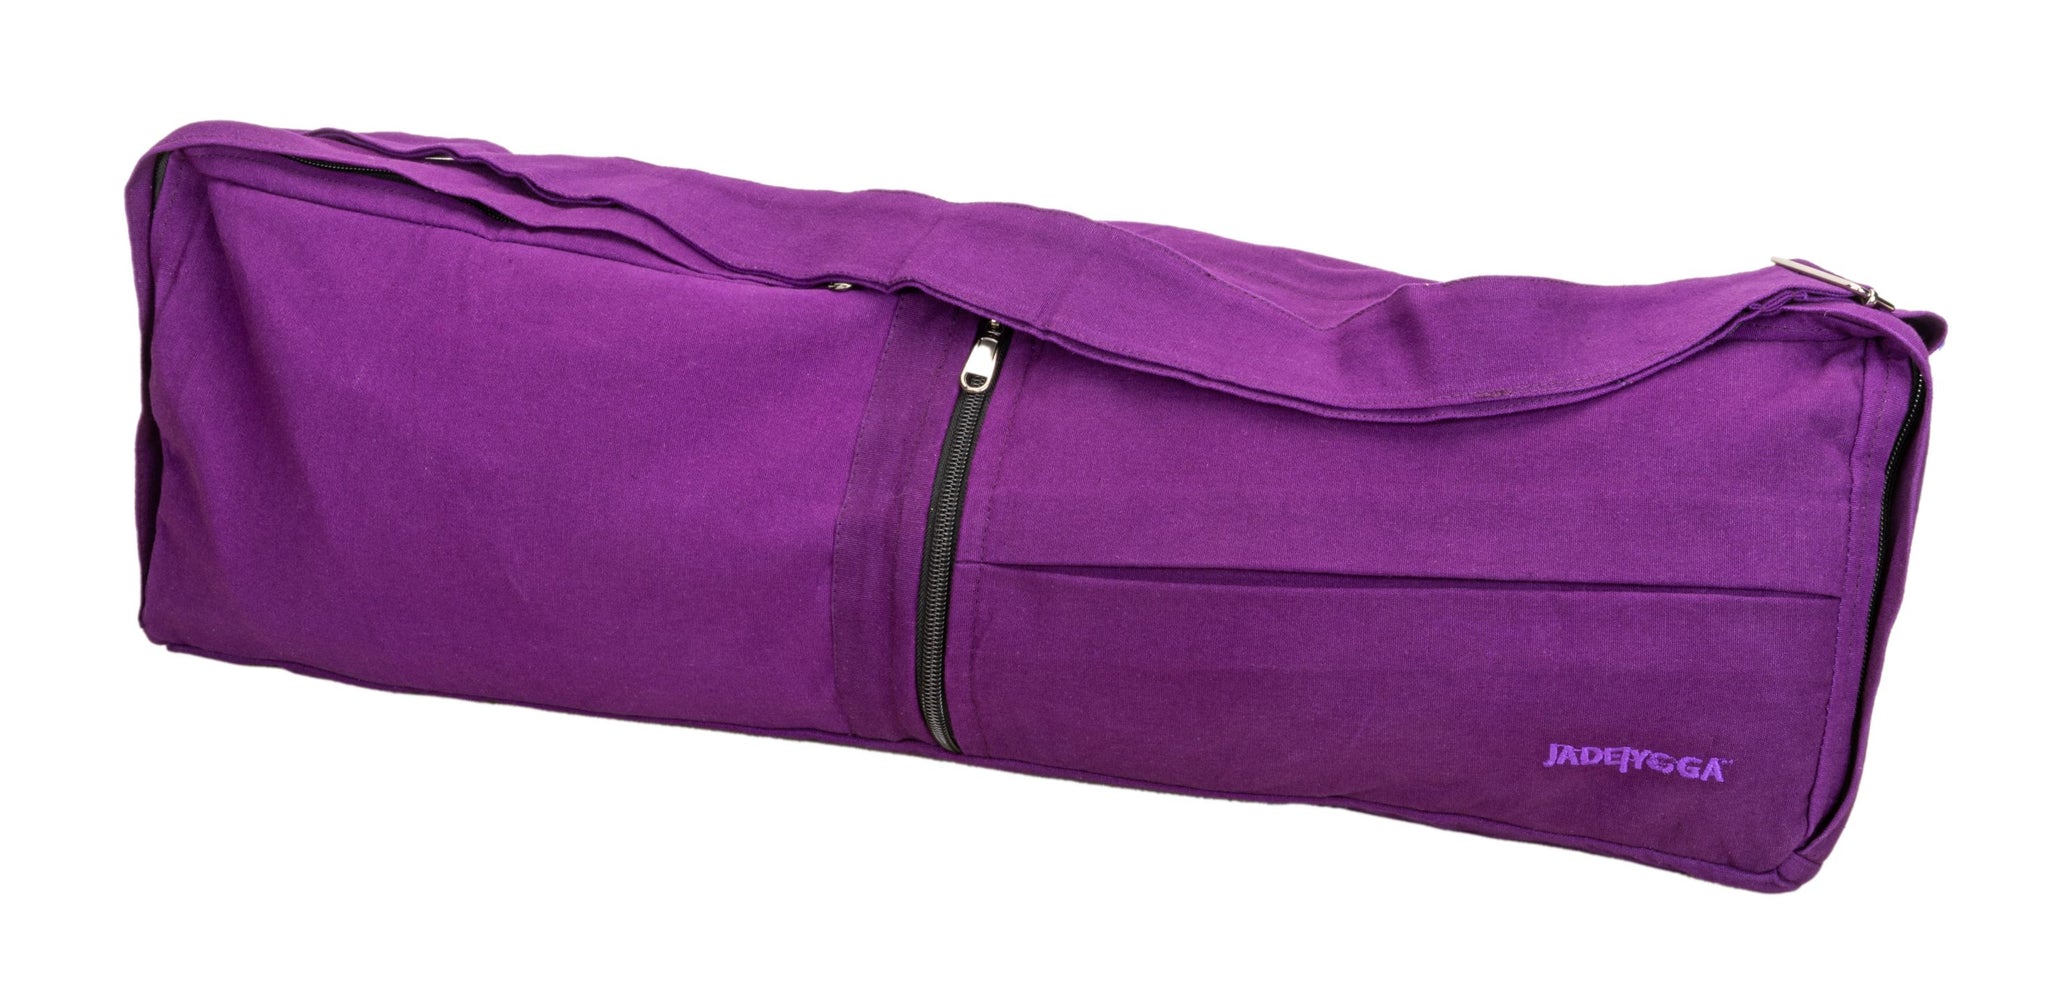 Carry a Bag, Carry a Cause - Yoga Mat Bag